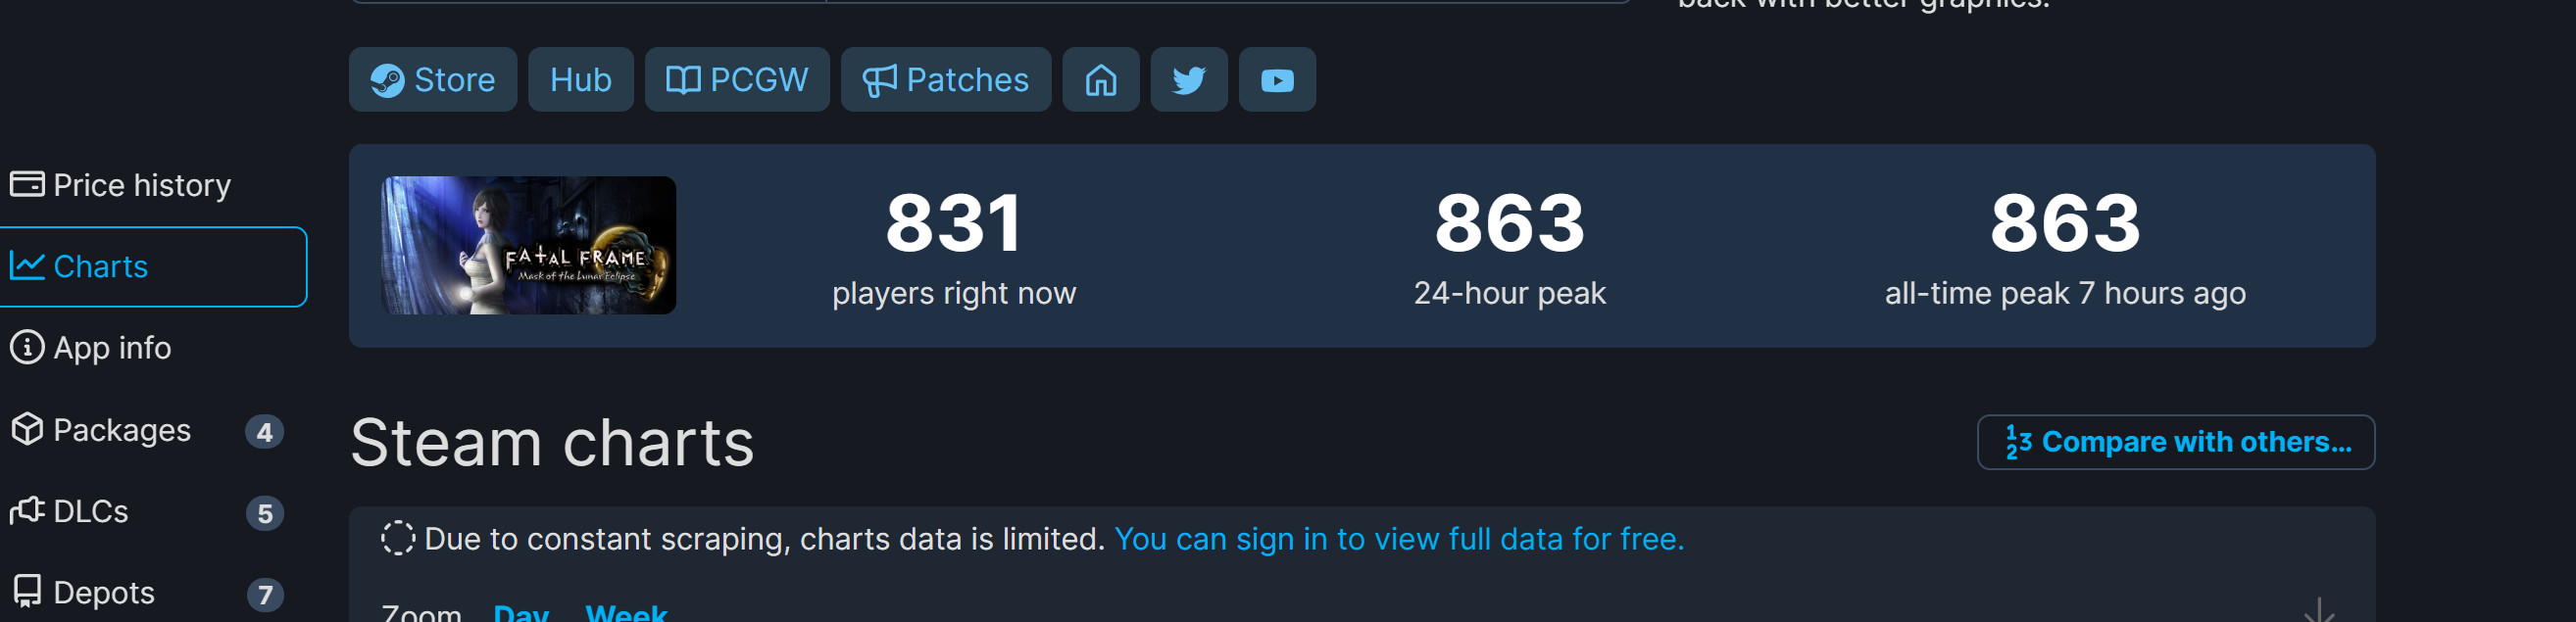 《整：月蚀的假里》Steam出格好评 峰值863人